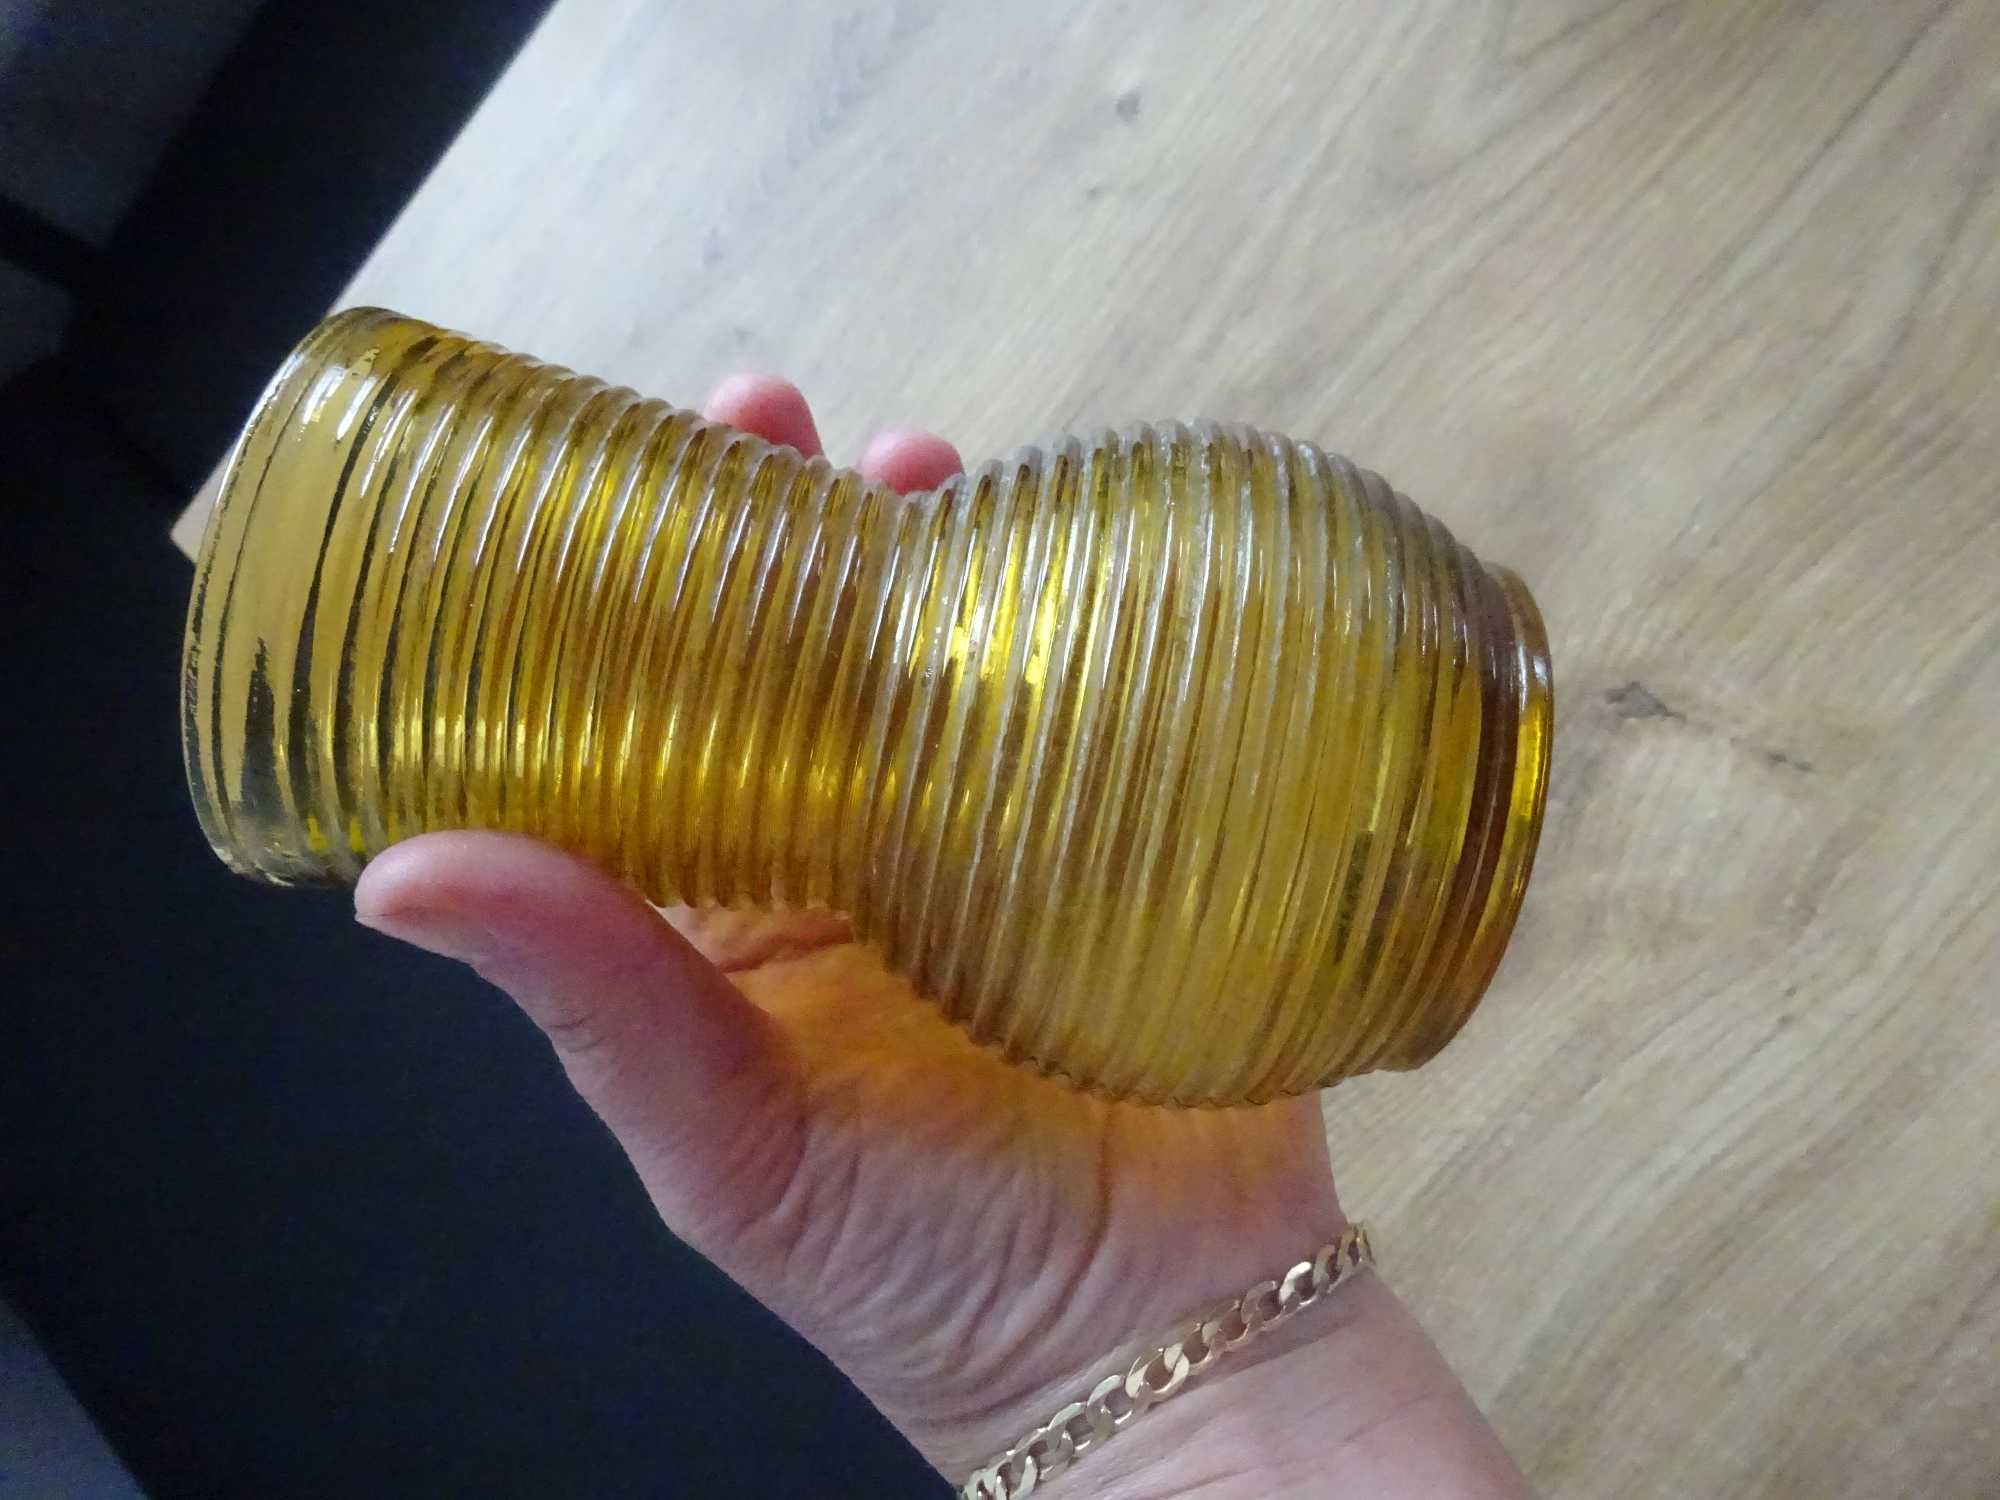 stary wazon żółty pamiątka PRL żółte szkło garbowane prążkowane 15 cm